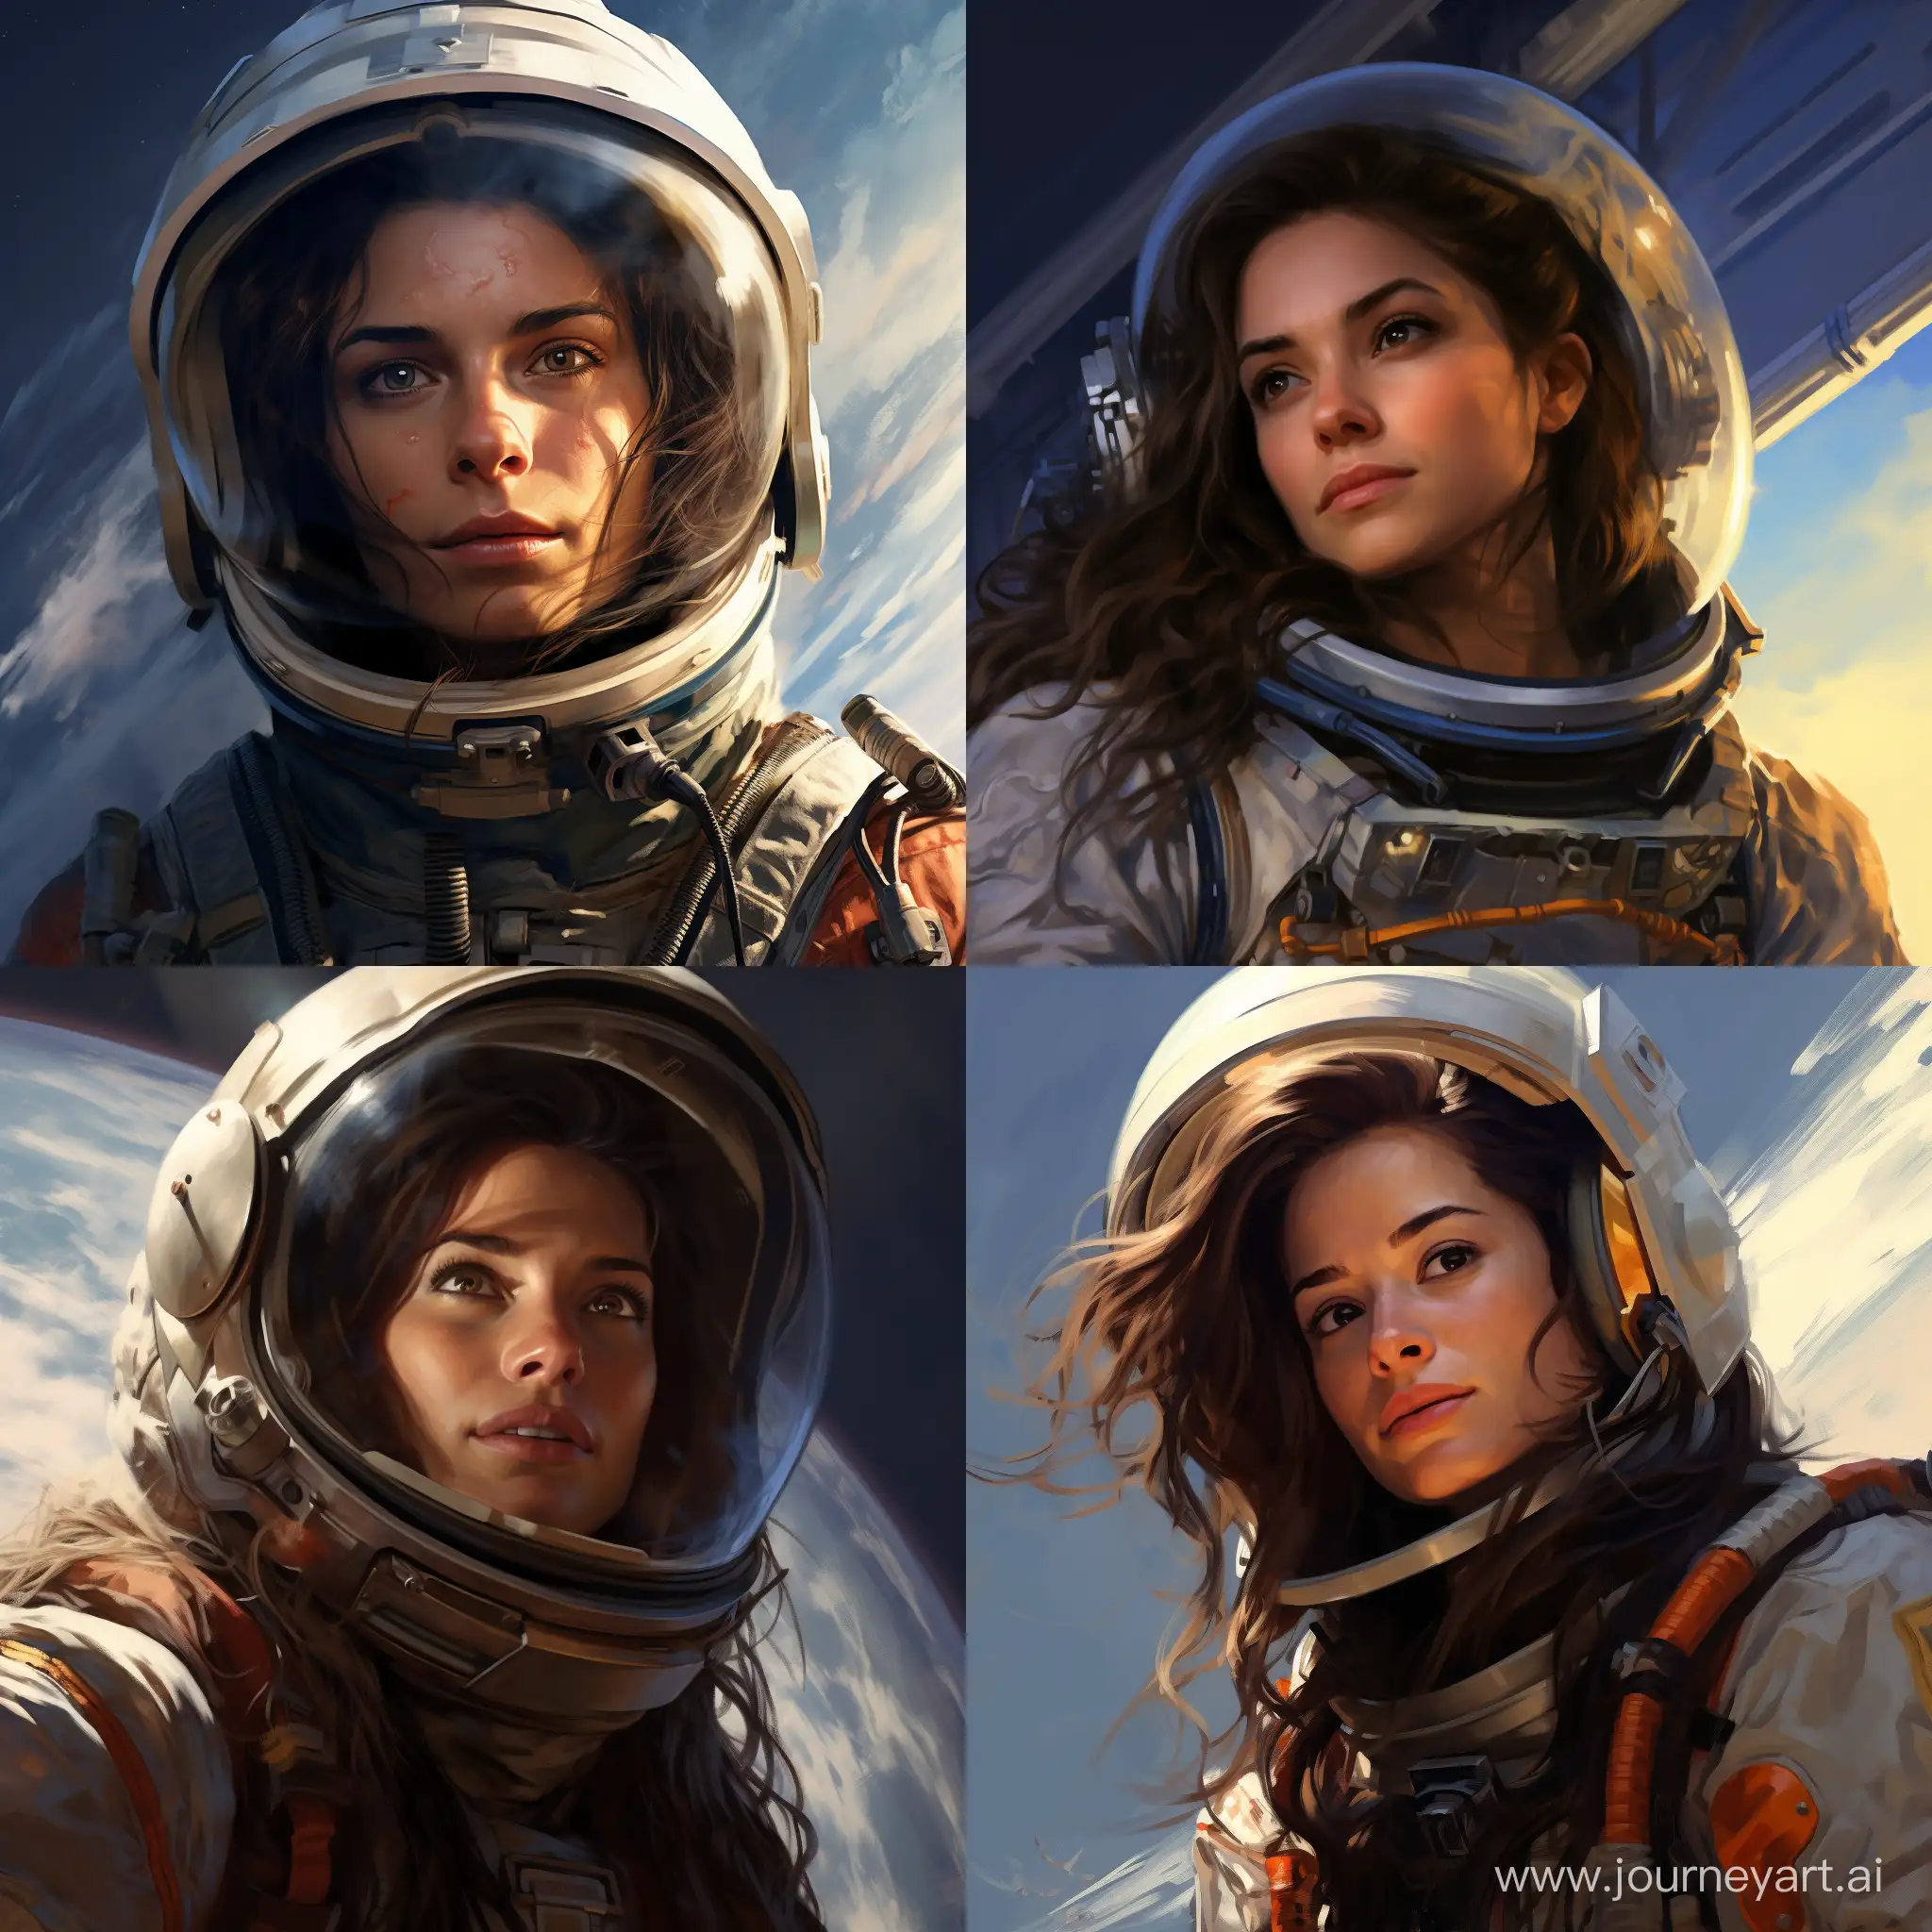 Exploring-the-Cosmos-Female-Astronaut-in-11-Aspect-Ratio